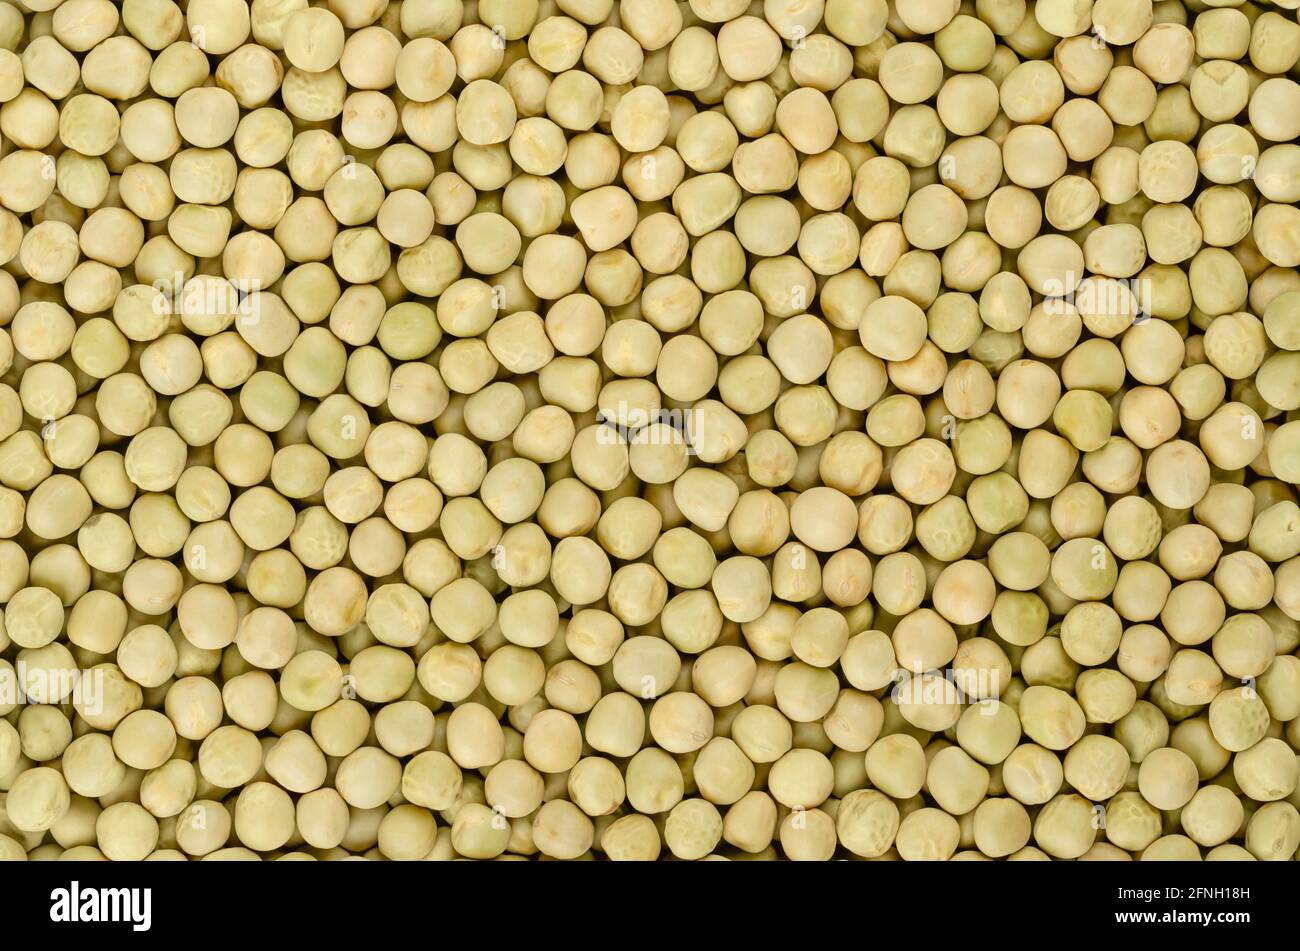 Piselli interi secchi, sfondo, dall'alto. Semi sferici grezzi del baccello Pisum sativum di colore verdolino e giallastro. Foto Stock